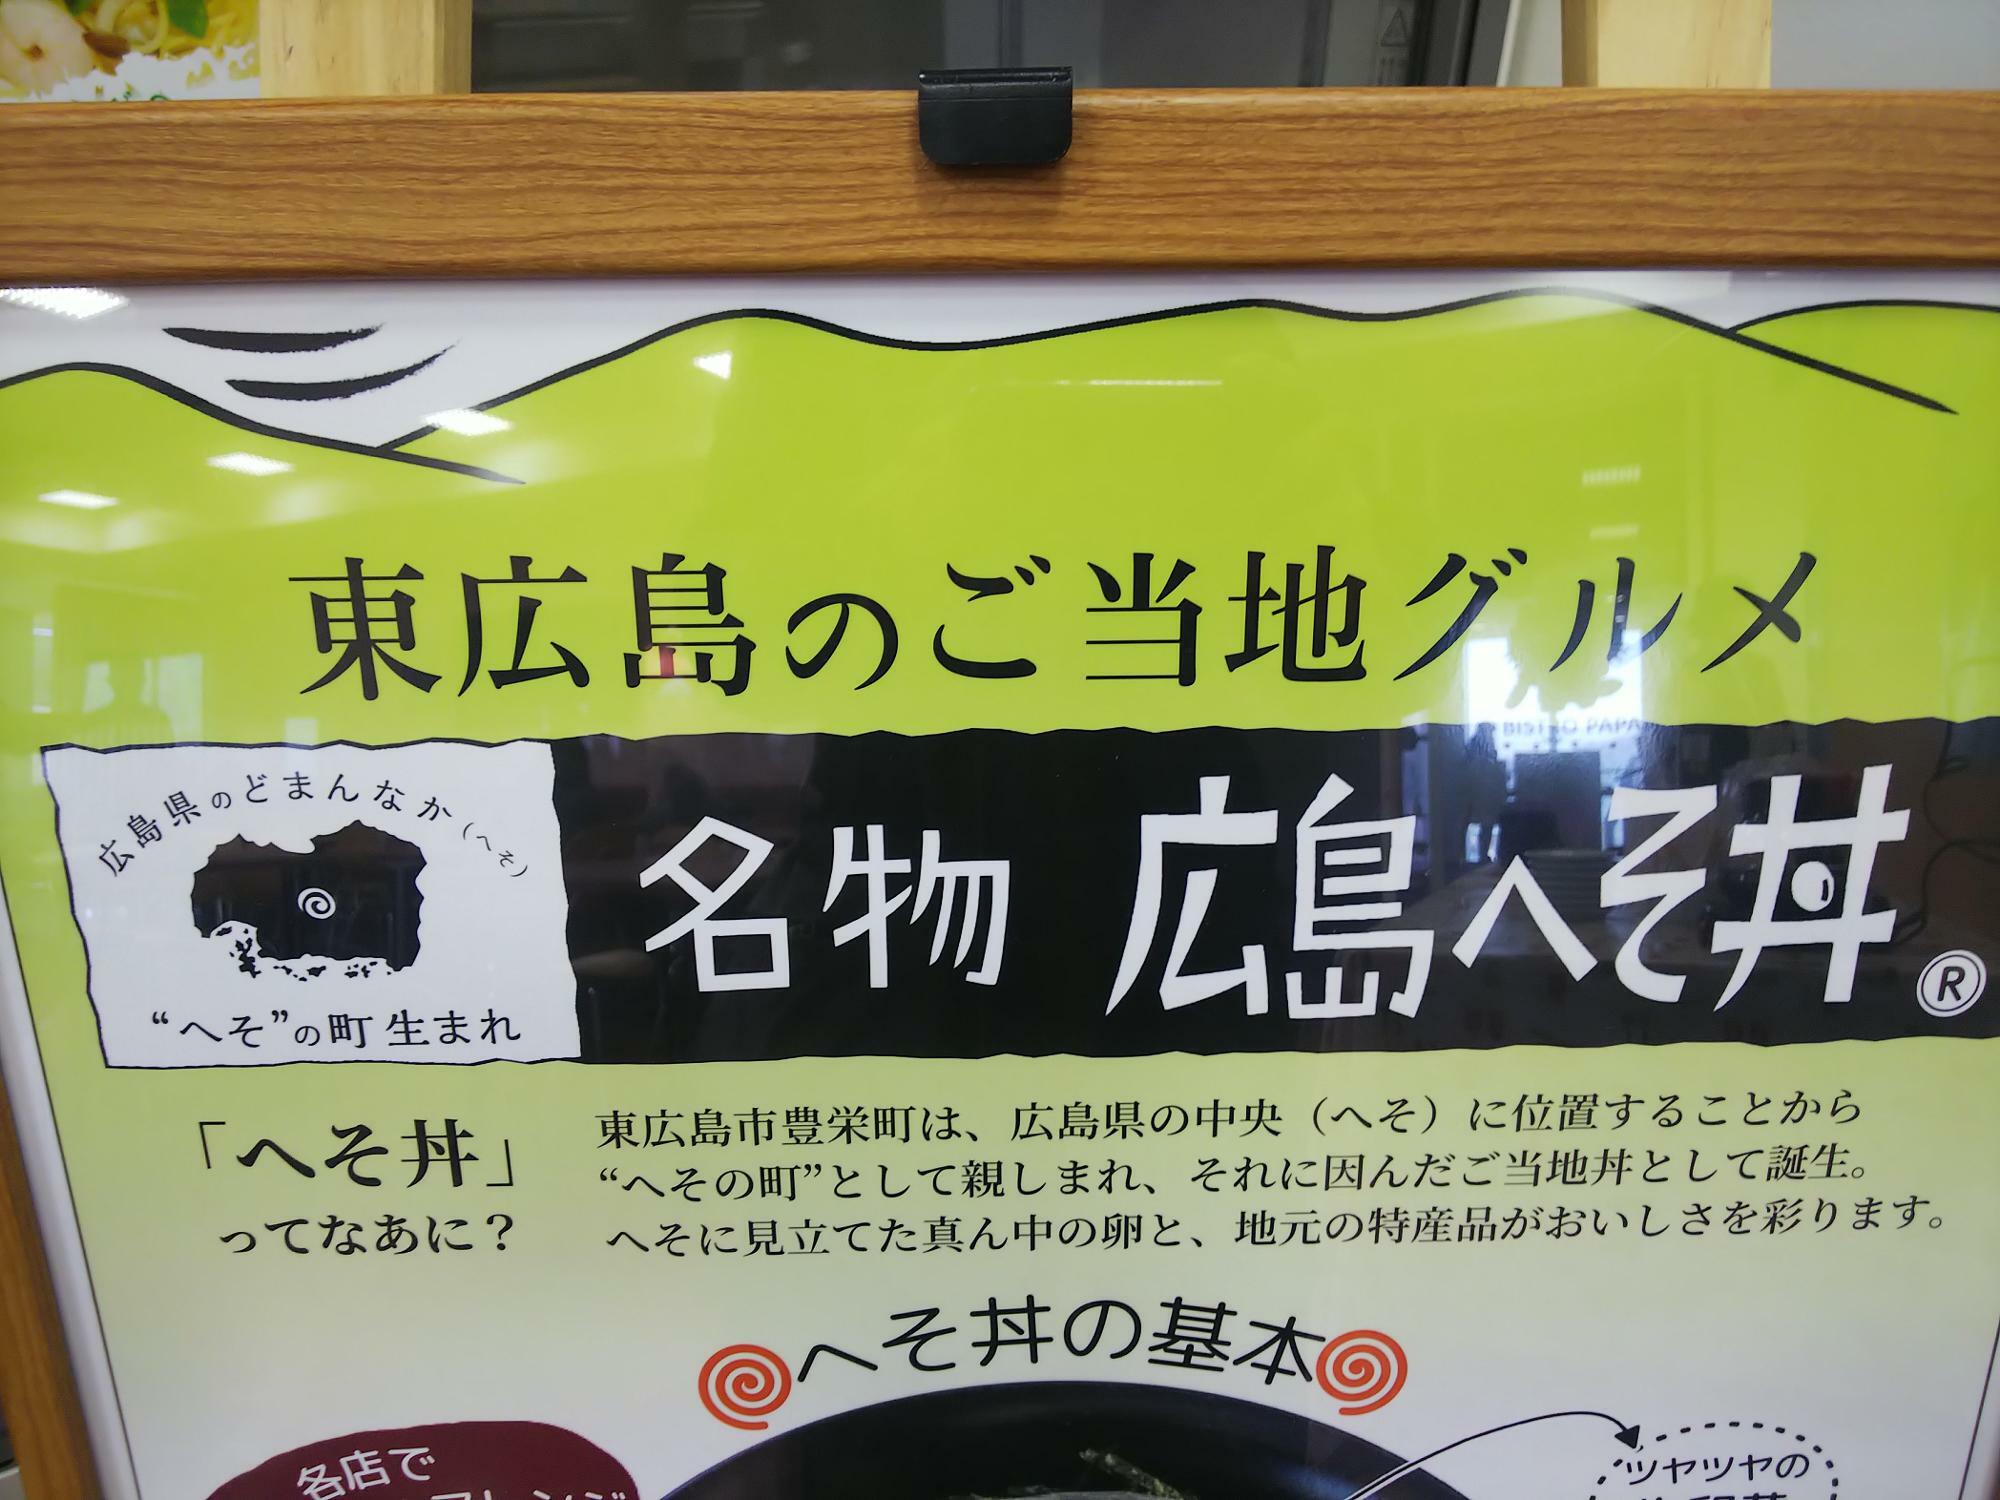 東広島のご当地グルメ、広島へそ丼をビストロパパ市役所店で食べてみよう